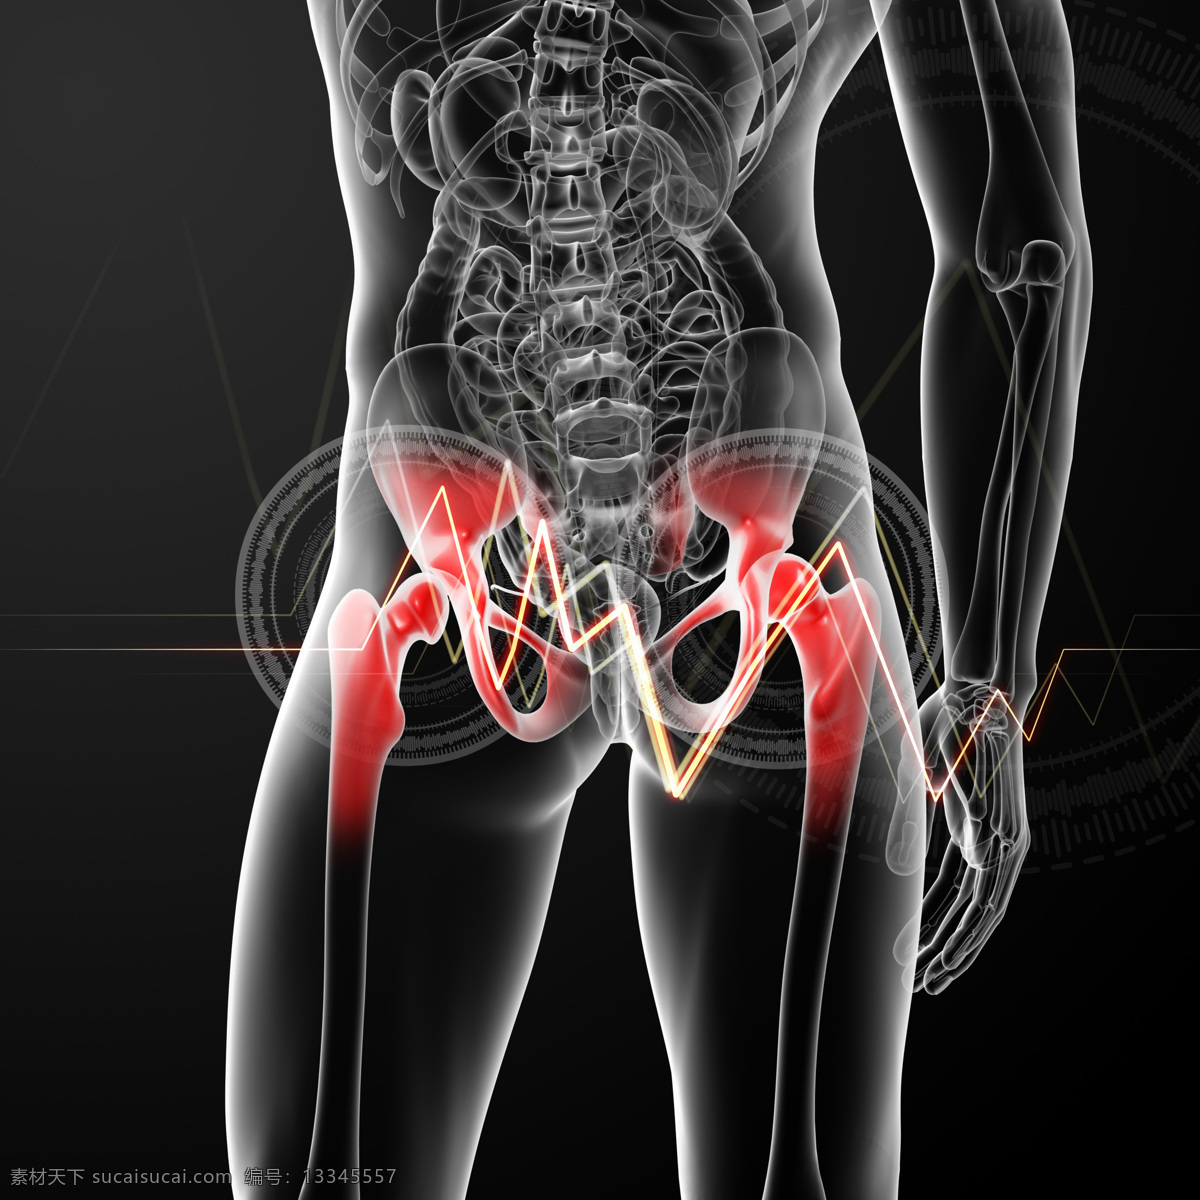 盆 骨 肌肉 骨骼 结构 盆骨 人体结构 人体骨骼 人体肌肉 人体标本 人体构造 医学标本 科学研究 现代科技